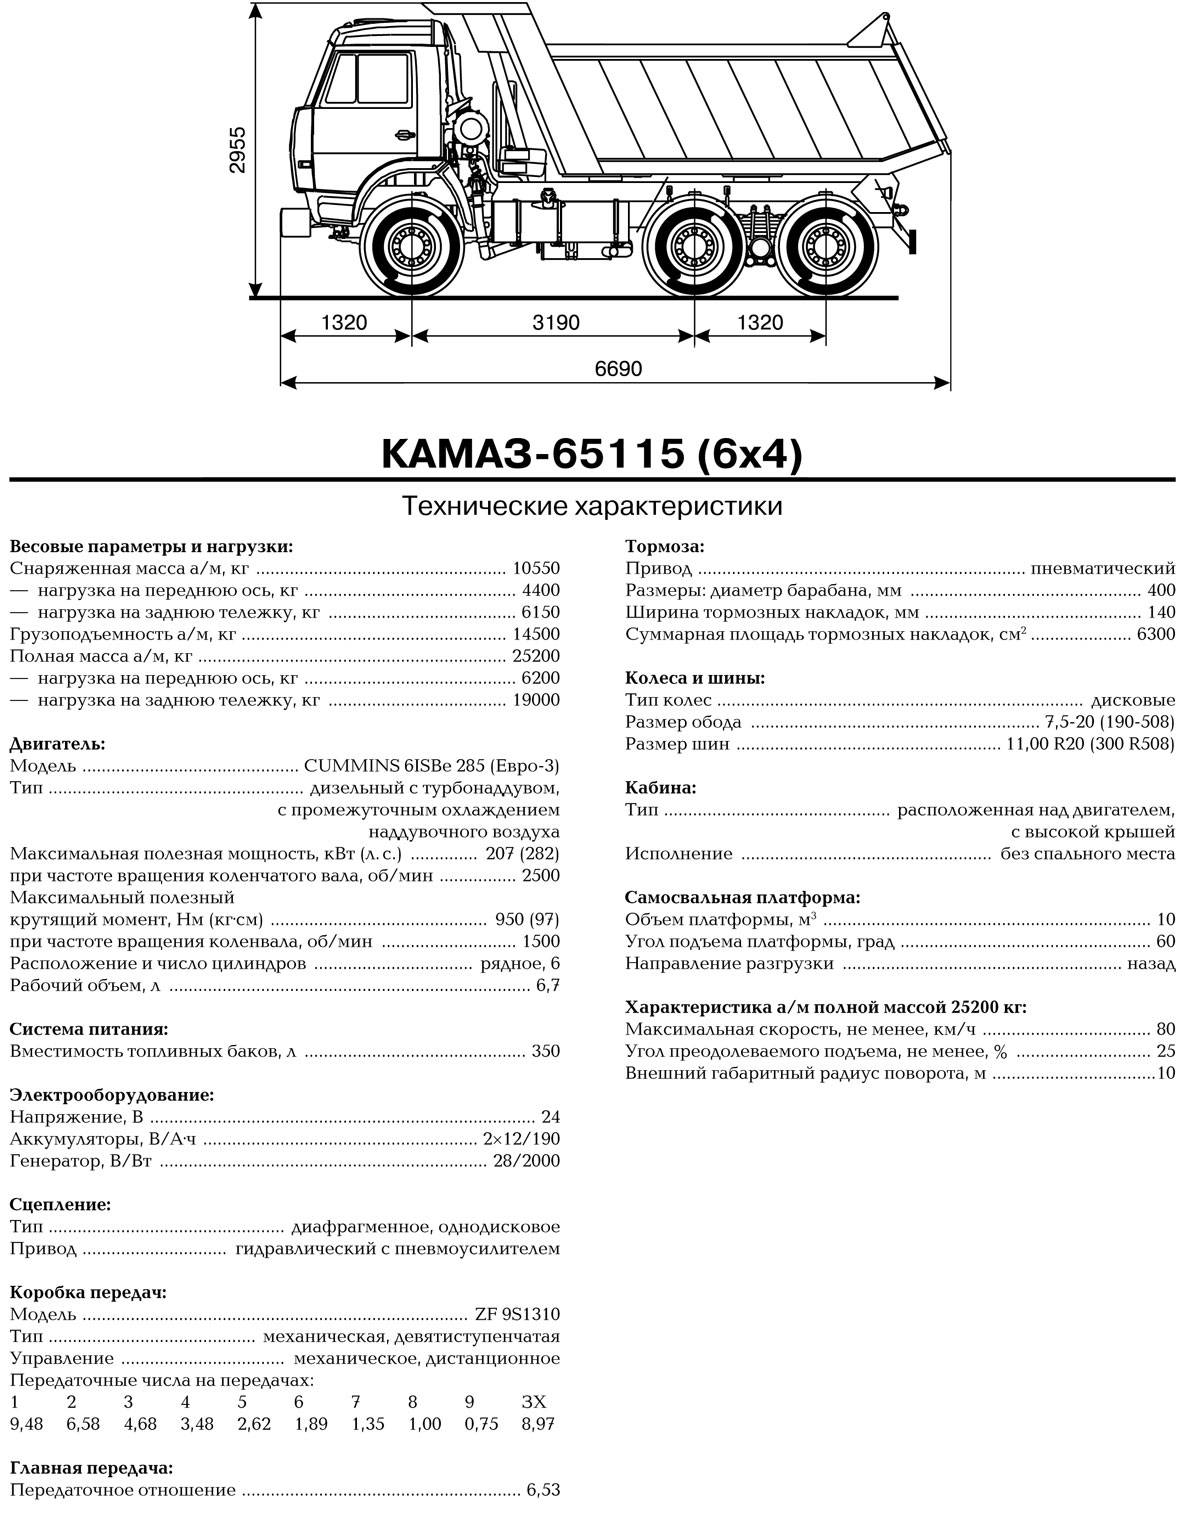 Камаз 65115 масса. КАМАЗ 65115 самосвал технические характеристики. КАМАЗ 65115 самосвал спецификация. ТТХ КАМАЗ 65115 самосвал. КАМАЗ 65115 технические характеристики технические.